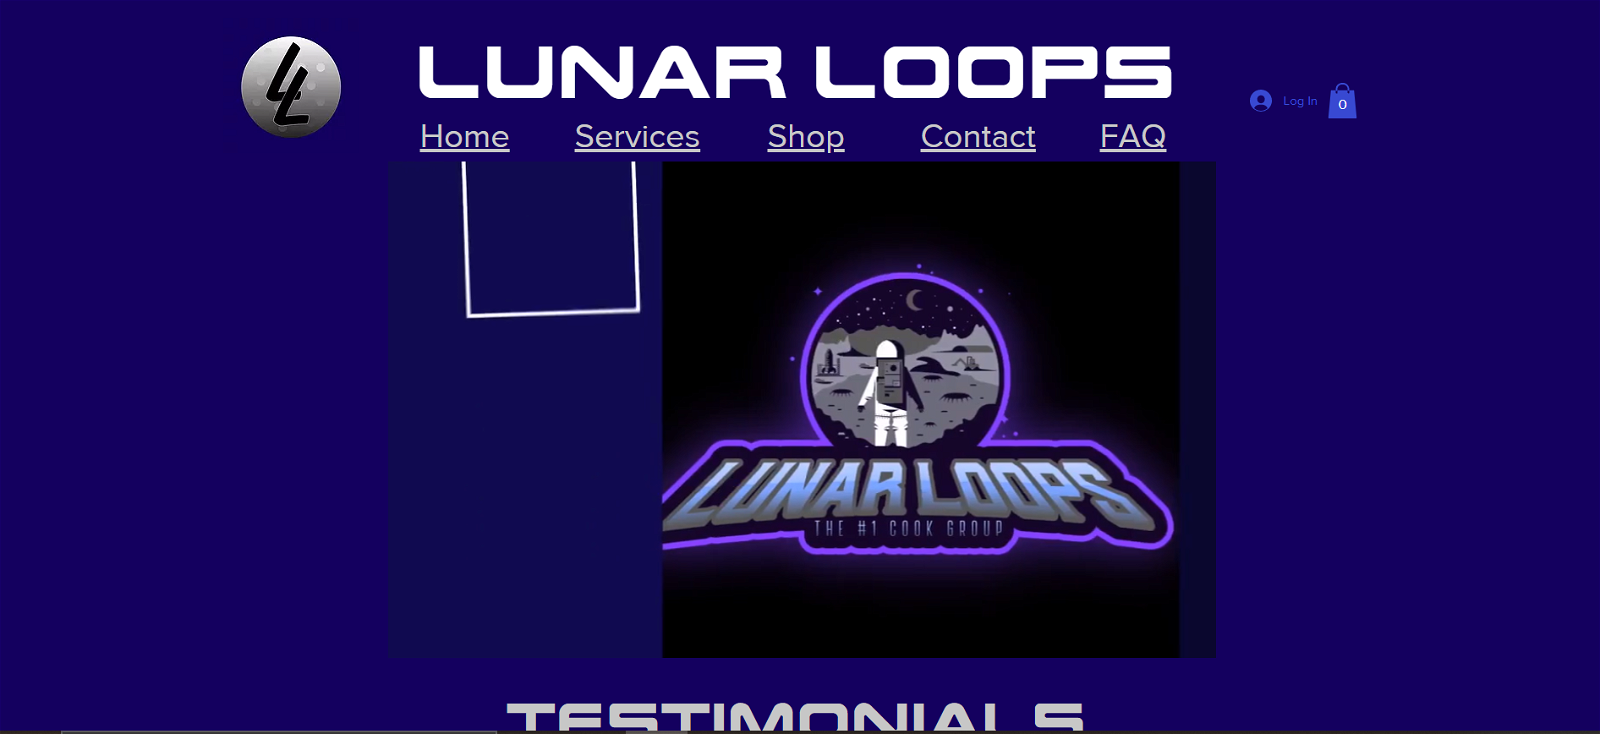 Lunar Loops cook group presentation banner